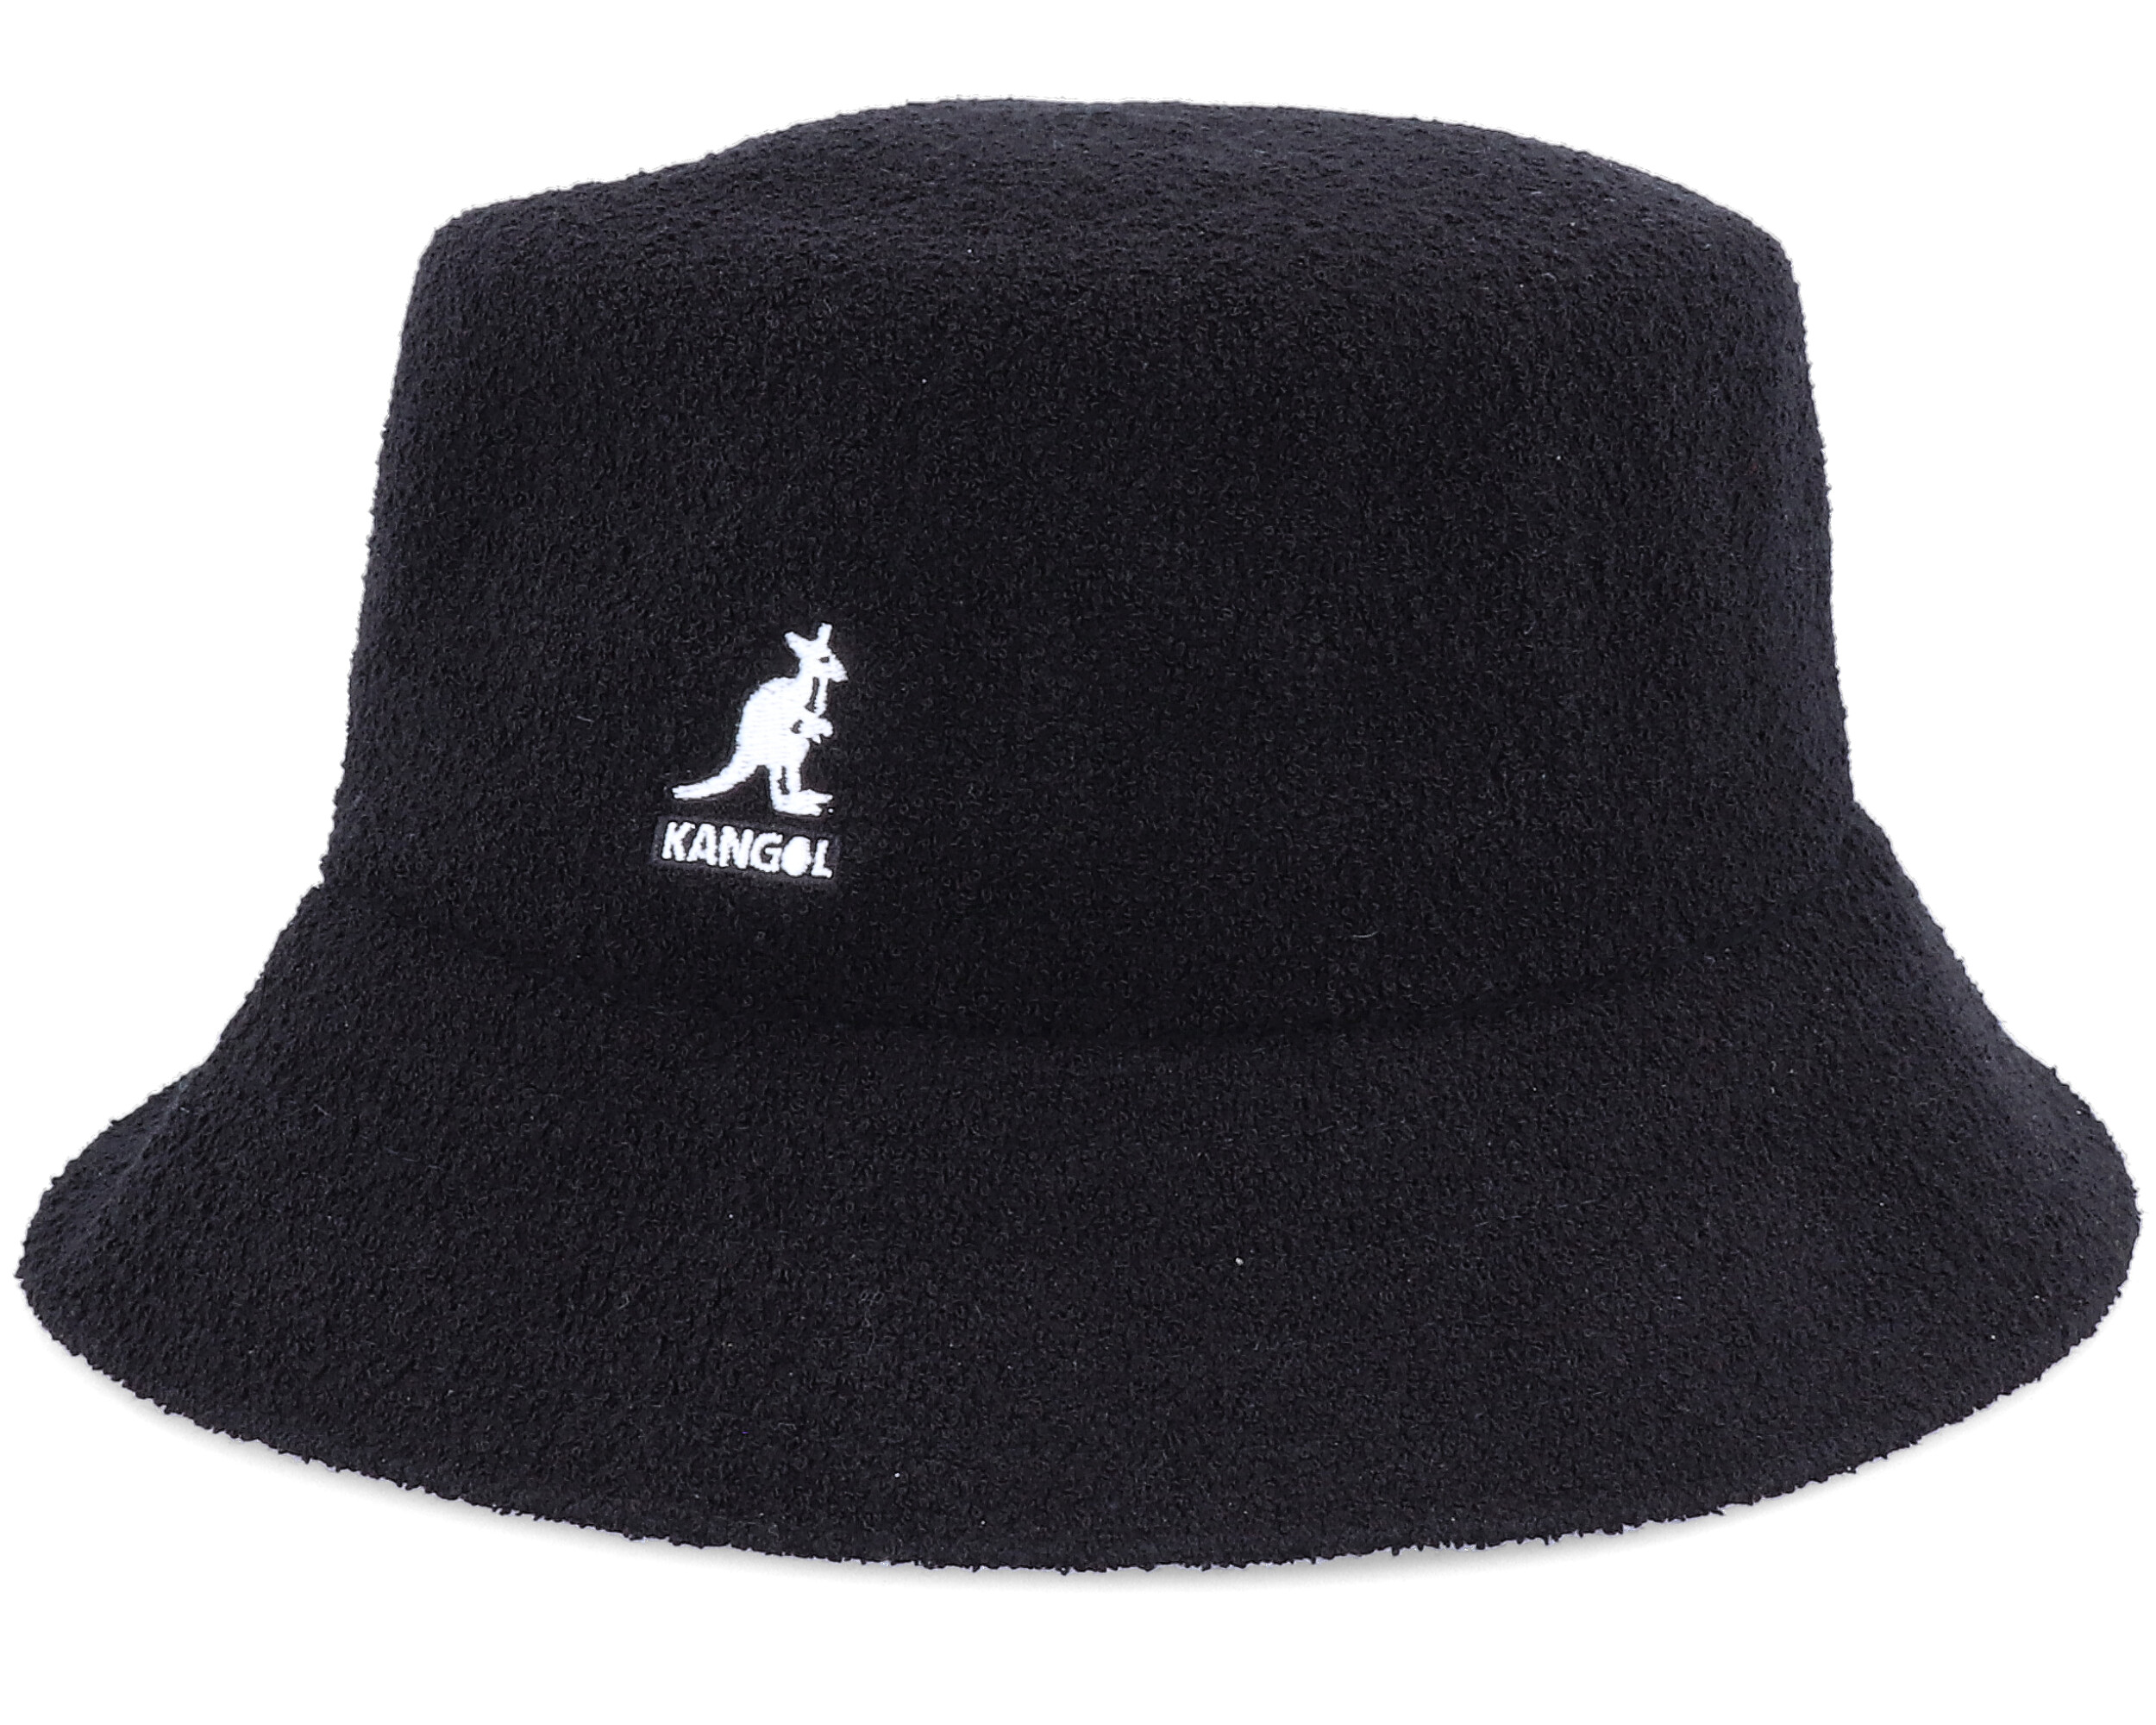 Bermuda Black Bucket - Kangol hats | Hatstore.co.uk